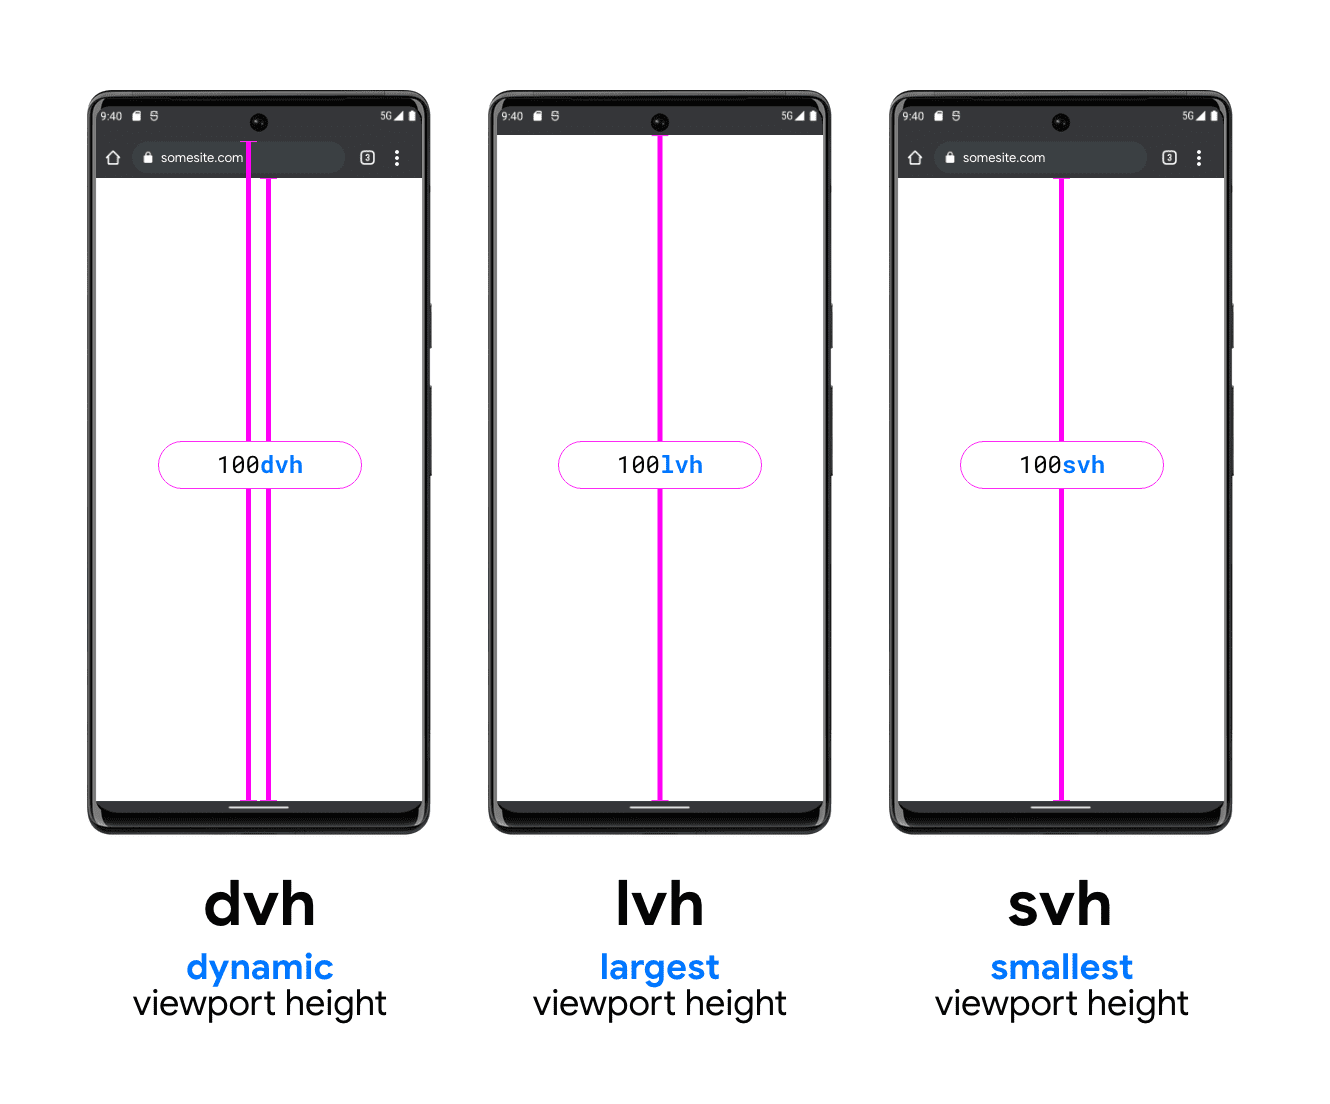 Un&#39;immagine con tre telefoni per mostrare DVH, LVH e SVH. Lo smartphone di esempio DVH ha due linee verticali, una tra la parte inferiore della barra di ricerca e la parte inferiore dell&#39;area visibile e una tra sopra la barra di ricerca (sotto la barra di stato del sistema) e la parte inferiore dell&#39;area visibile; mostra come DVH può avere una di queste due lunghezze. LVH è mostrato al centro con una linea tra la parte inferiore della barra di stato del dispositivo e il pulsante dell&#39;area visibile del telefono. L&#39;ultimo è l&#39;esempio di unità SVH, che mostra una linea dalla parte inferiore della barra di ricerca del browser alla parte inferiore dell&#39;area visibile